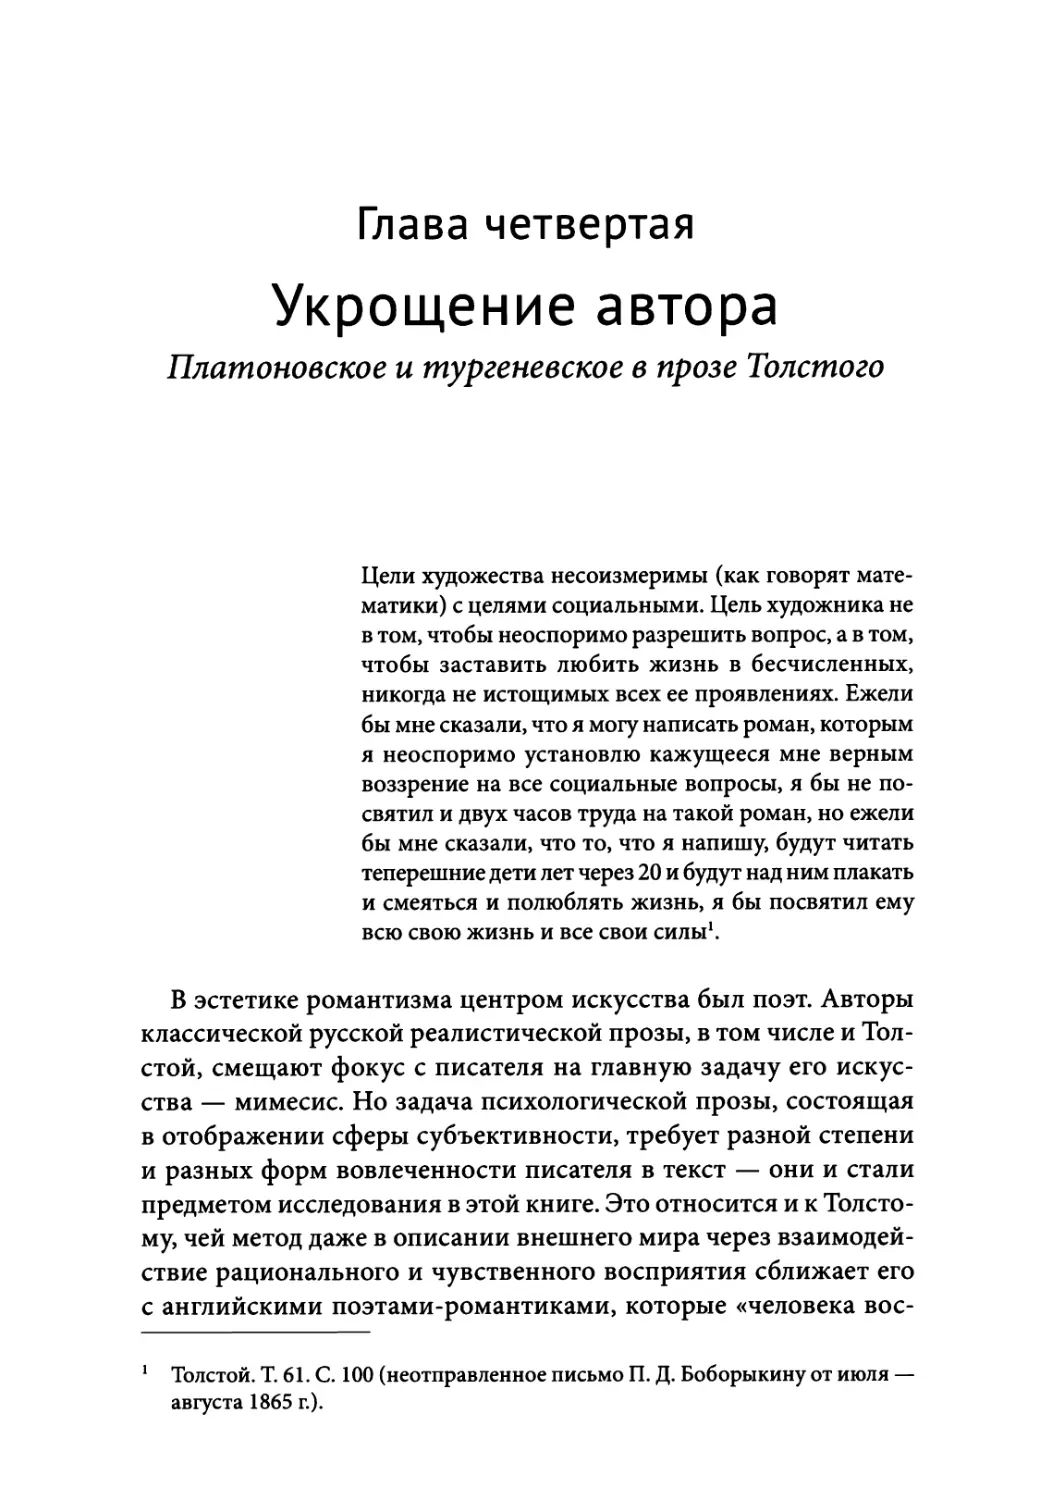 Глава 4. Укрощение автора: платоновское и тургеневское в прозе Толстого